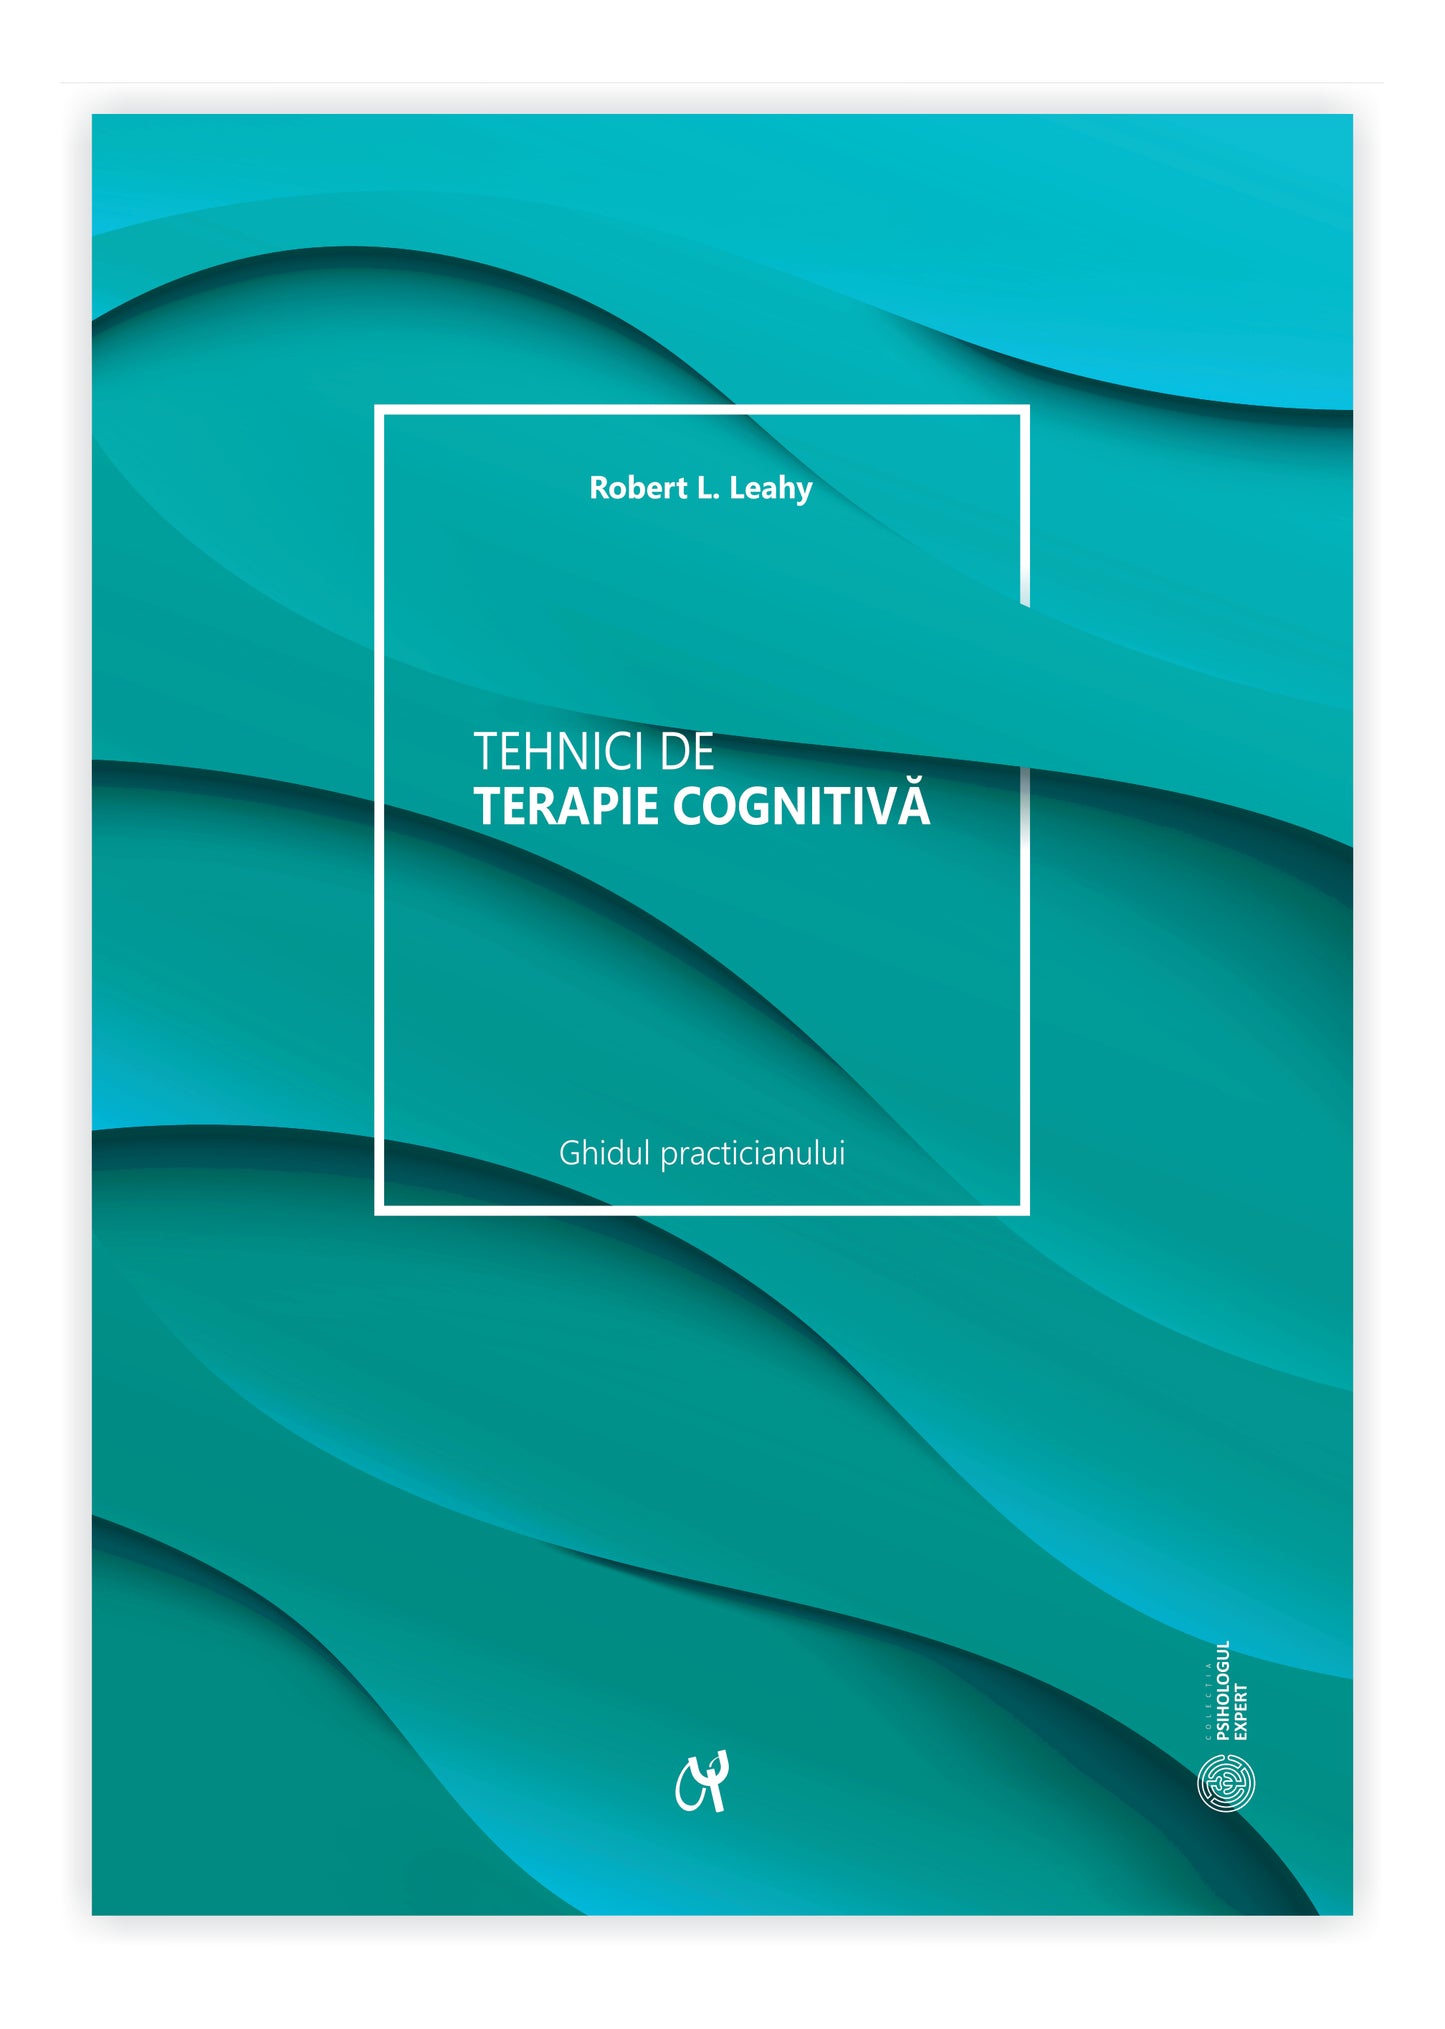 Tehnici de terapie cognitivă, ediția a doua